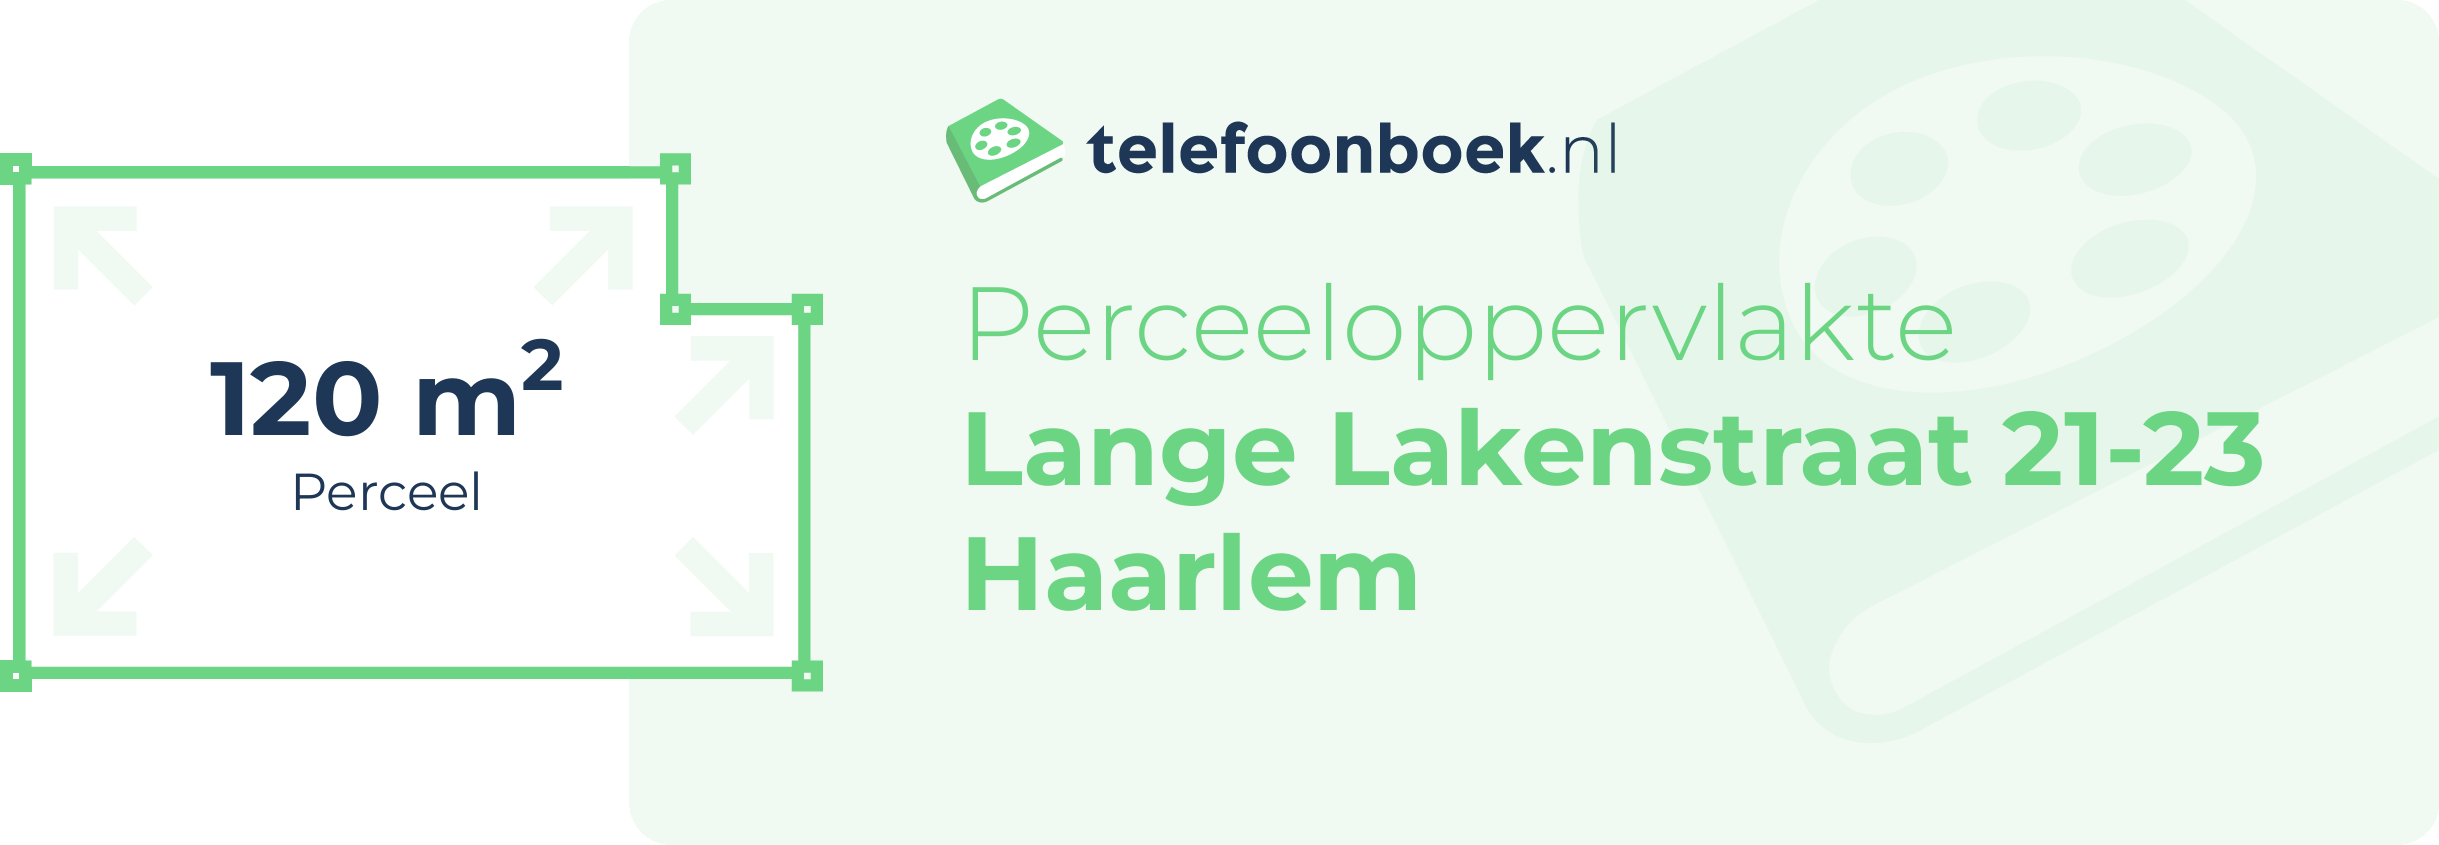 Perceeloppervlakte Lange Lakenstraat 21-23 Haarlem